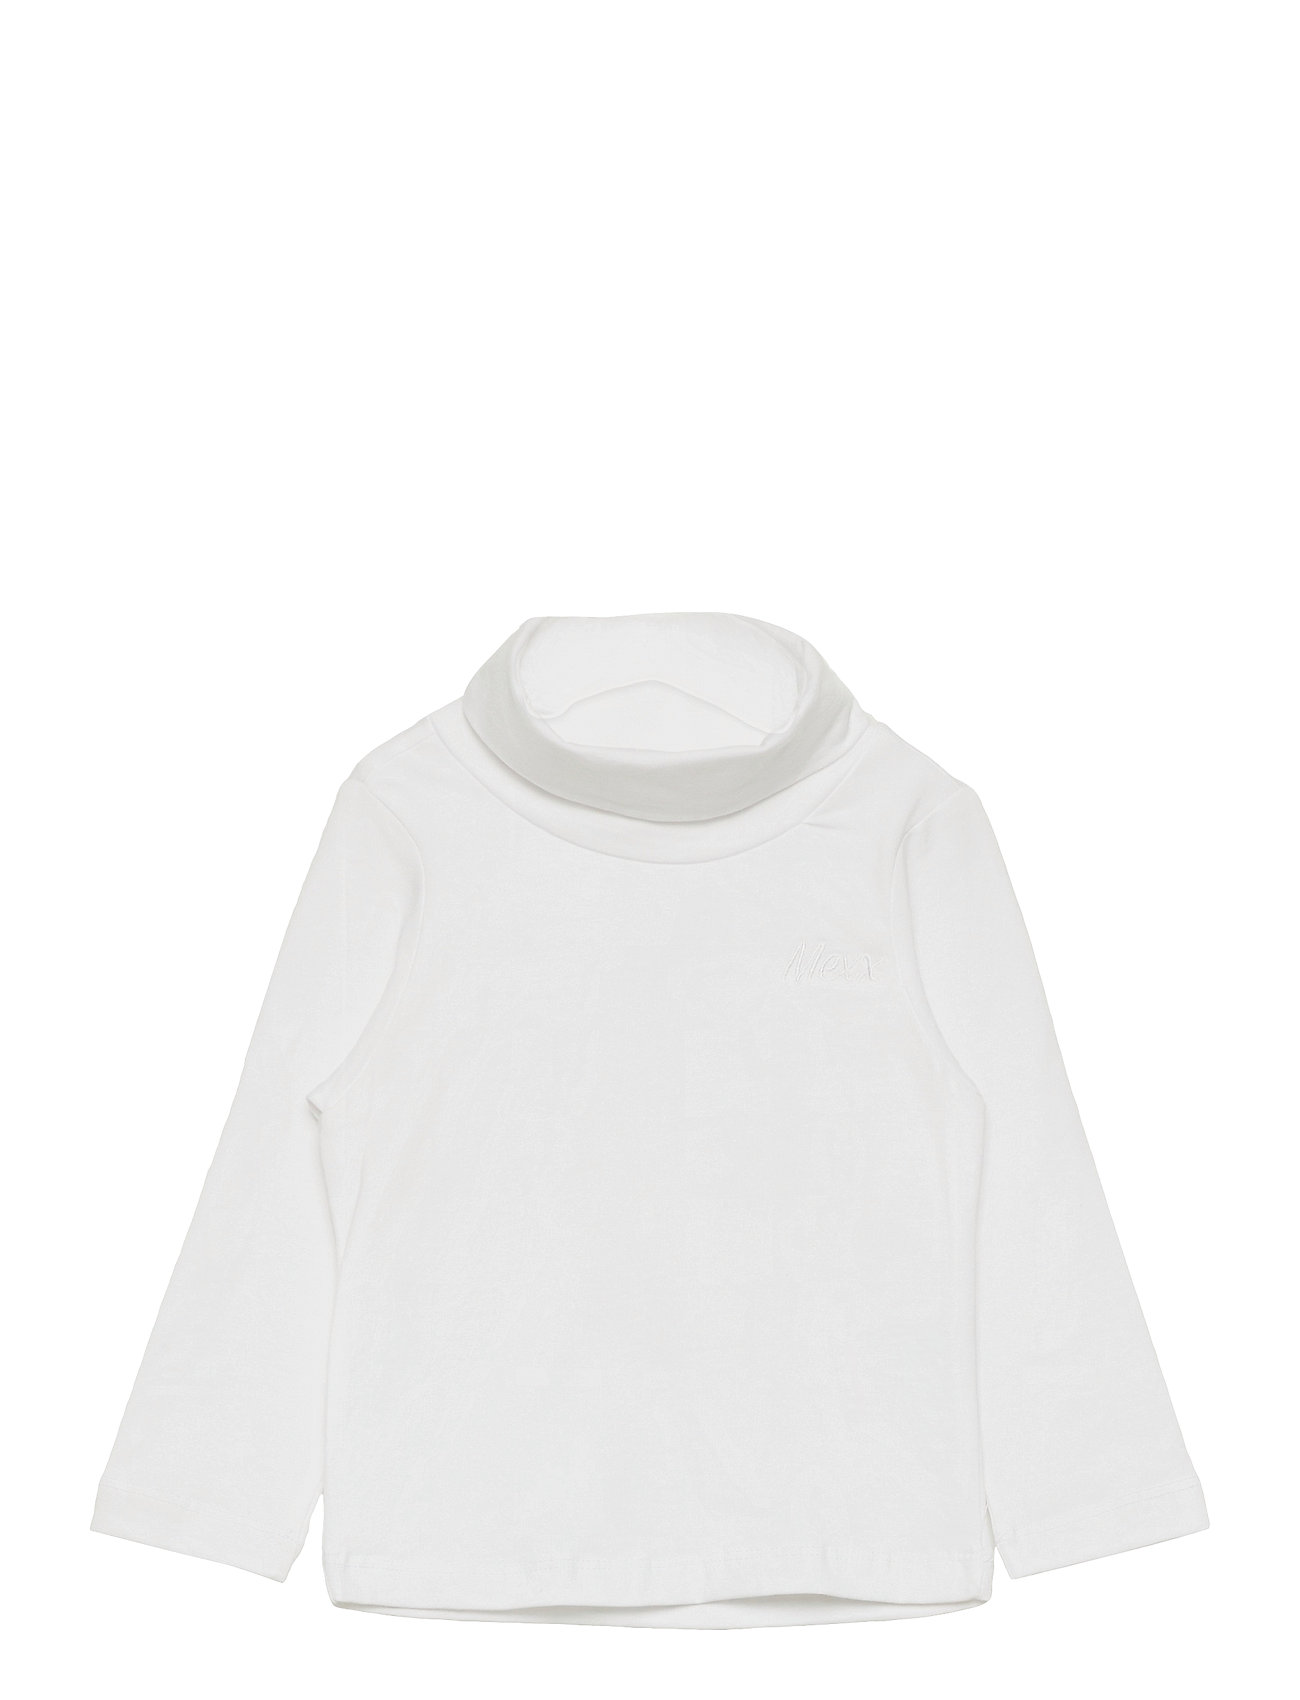 T-Shirt T-shirts Long-sleeved T-shirts Valkoinen Mexx